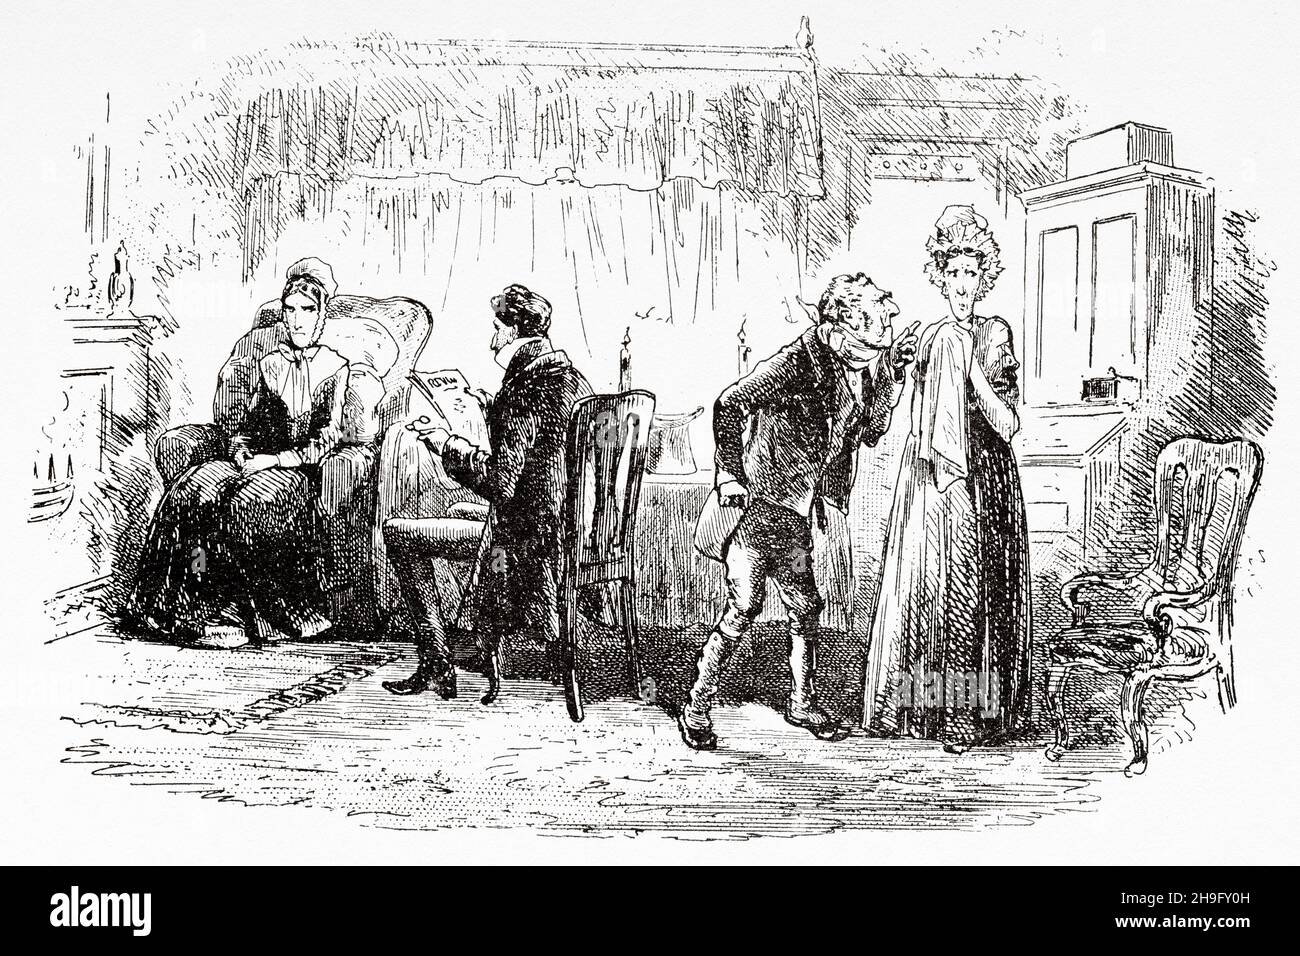 Desaparecidos y soñando. Ilustración de la novela de Charles Dickens Little Dorrit de Hablot Knight Browne (1815-1882) Artista inglés conocido como Phiz Foto de stock